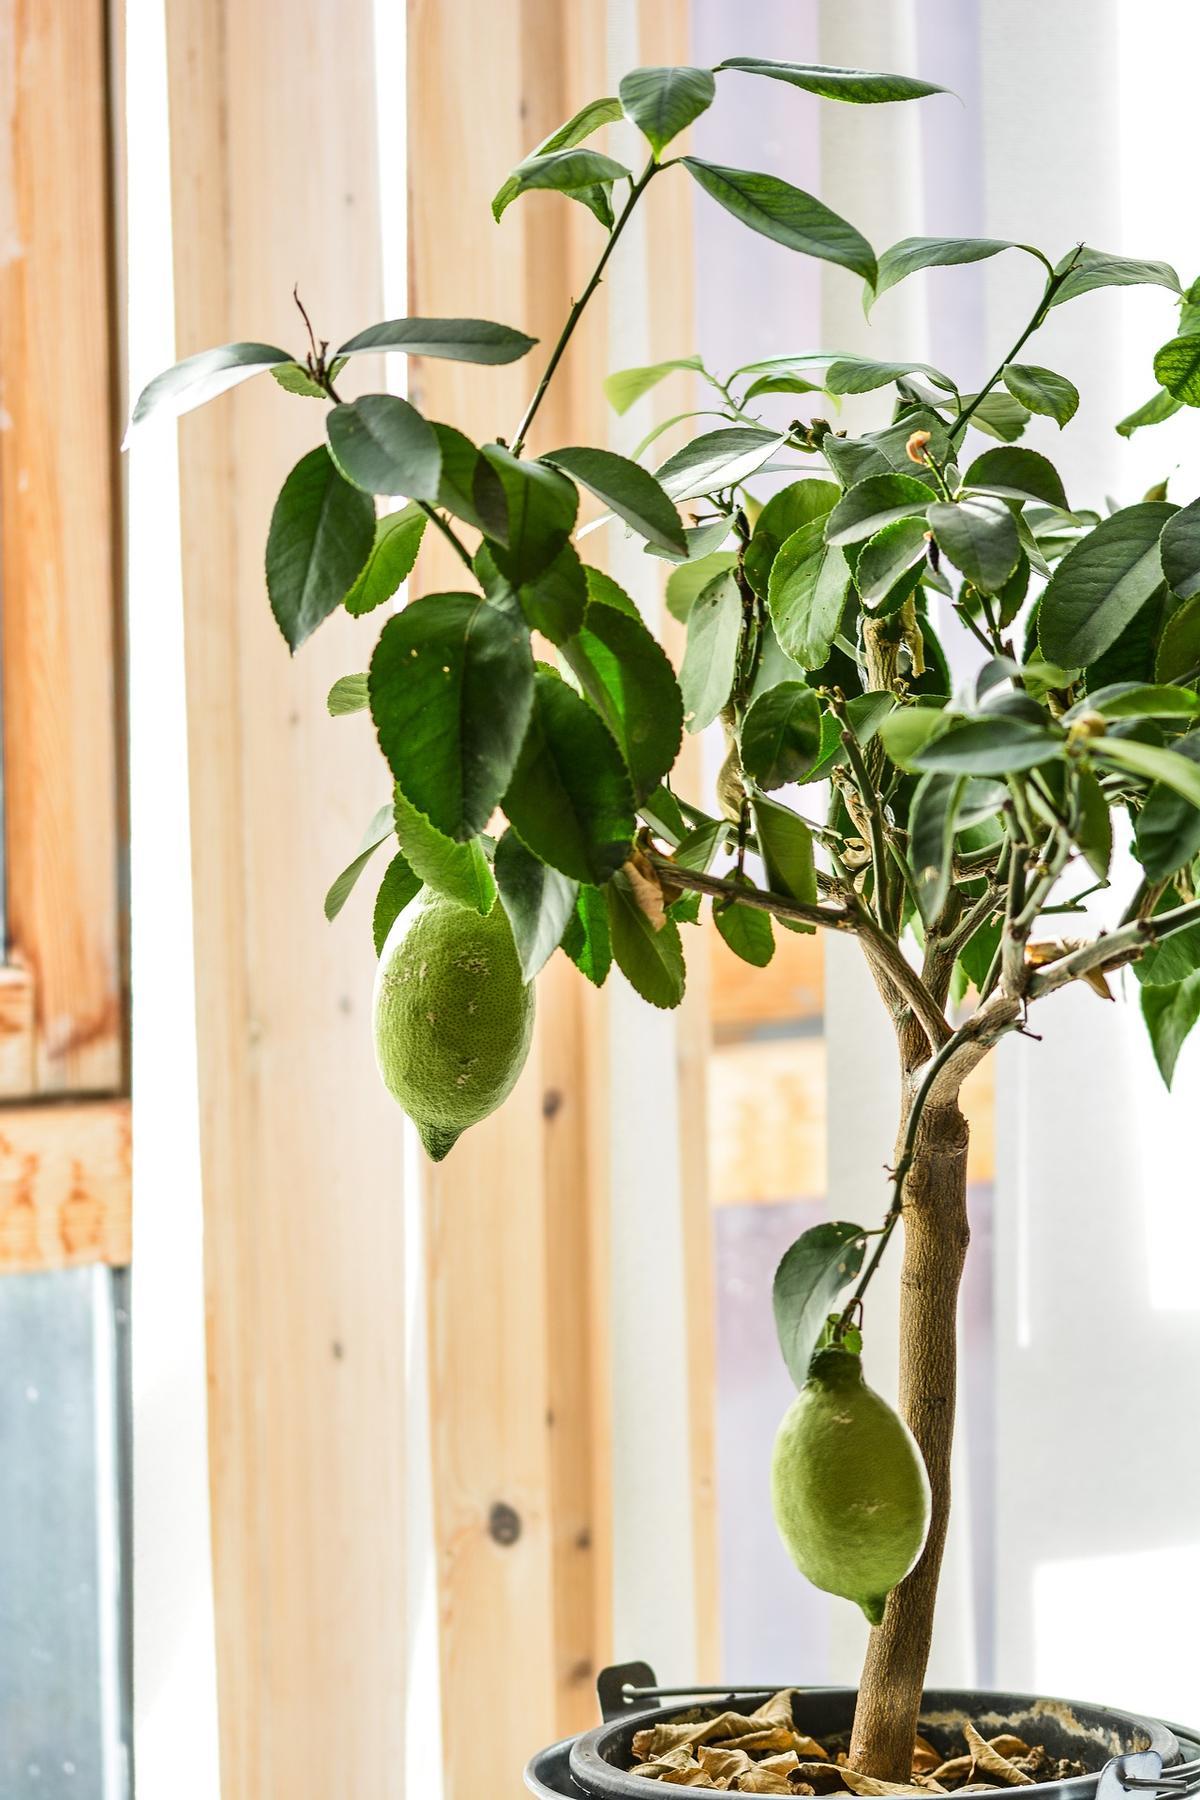 Tener una planta de limonero en casa es un excelente ambientador natural